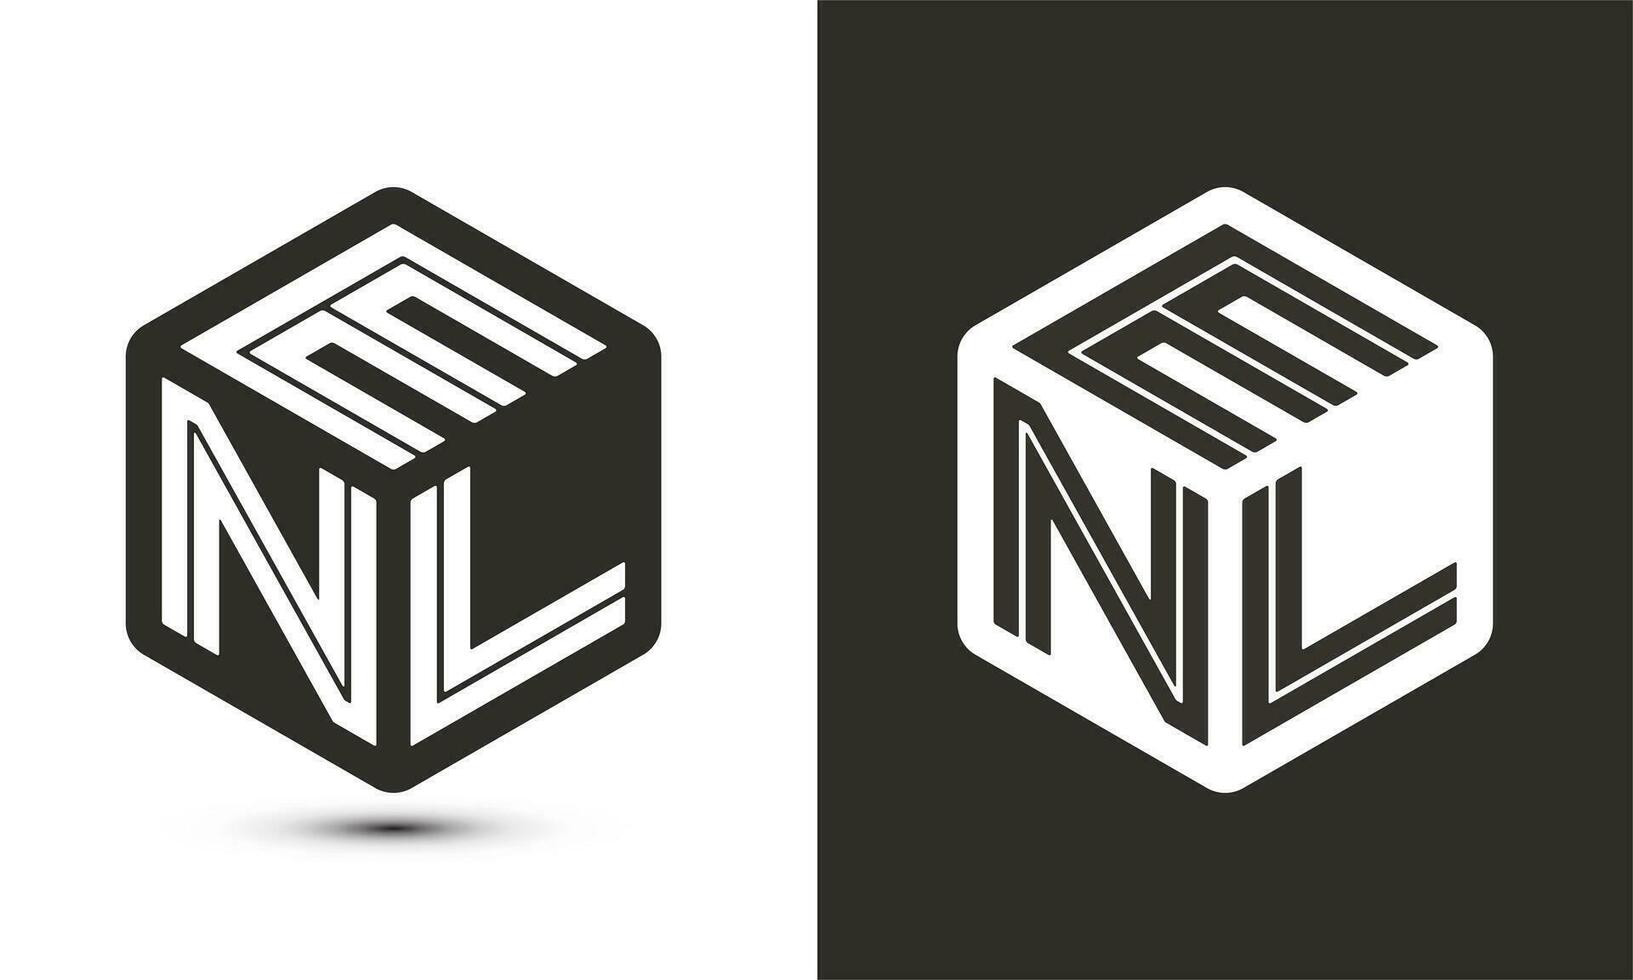 ENL letter logo design with illustrator cube logo, vector logo modern alphabet font overlap style.